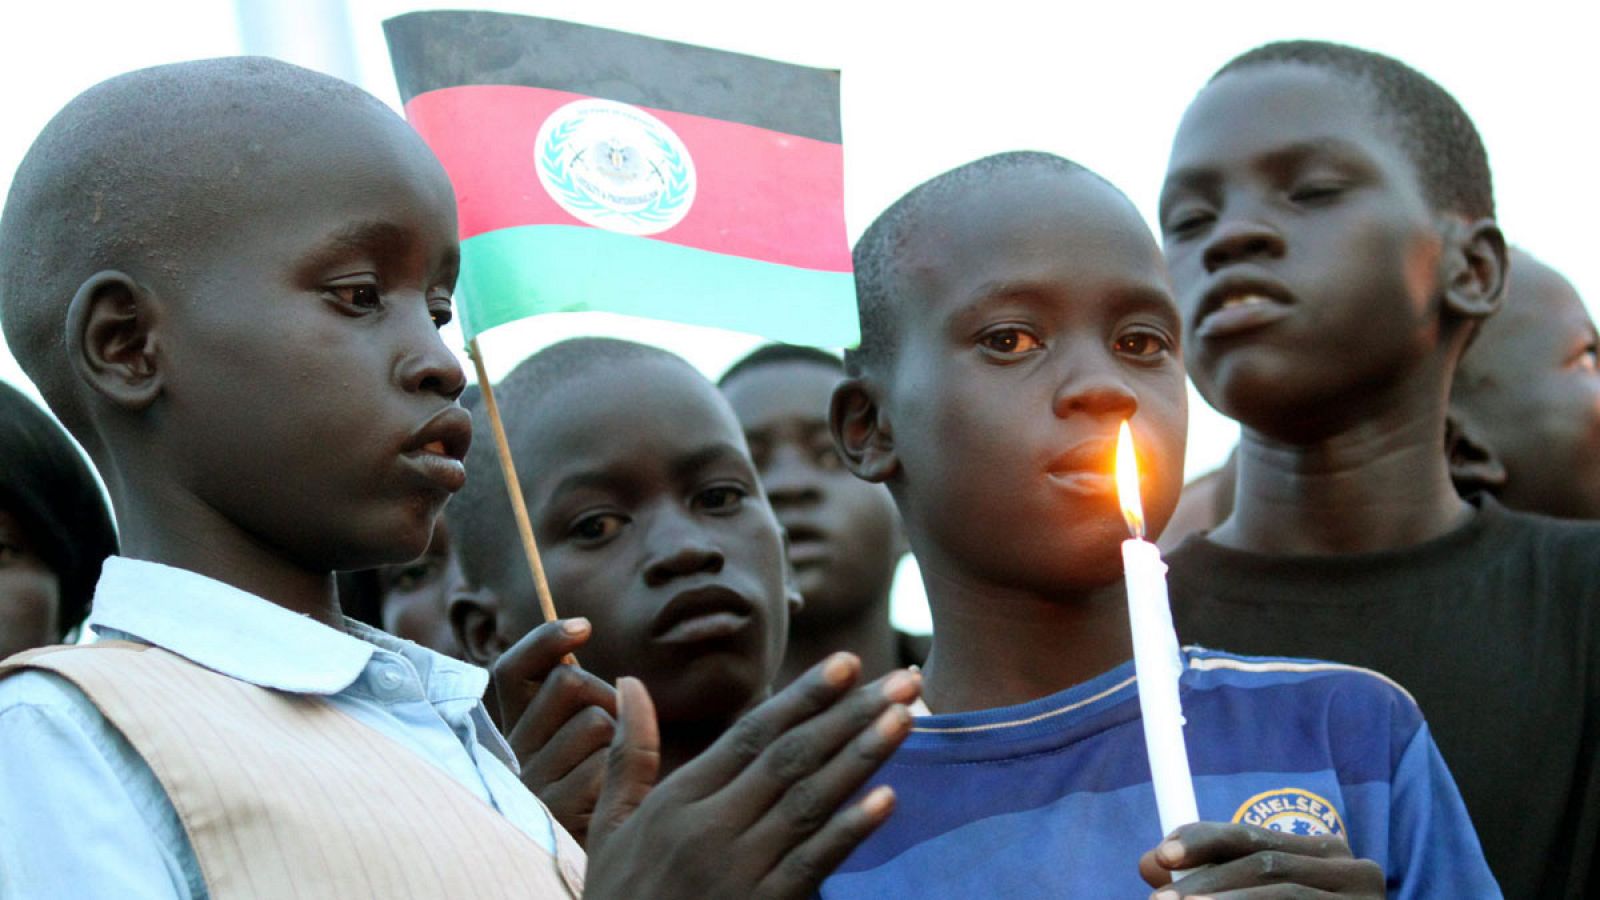 Imagen de unos niños en Juba (Sudán del Sur).